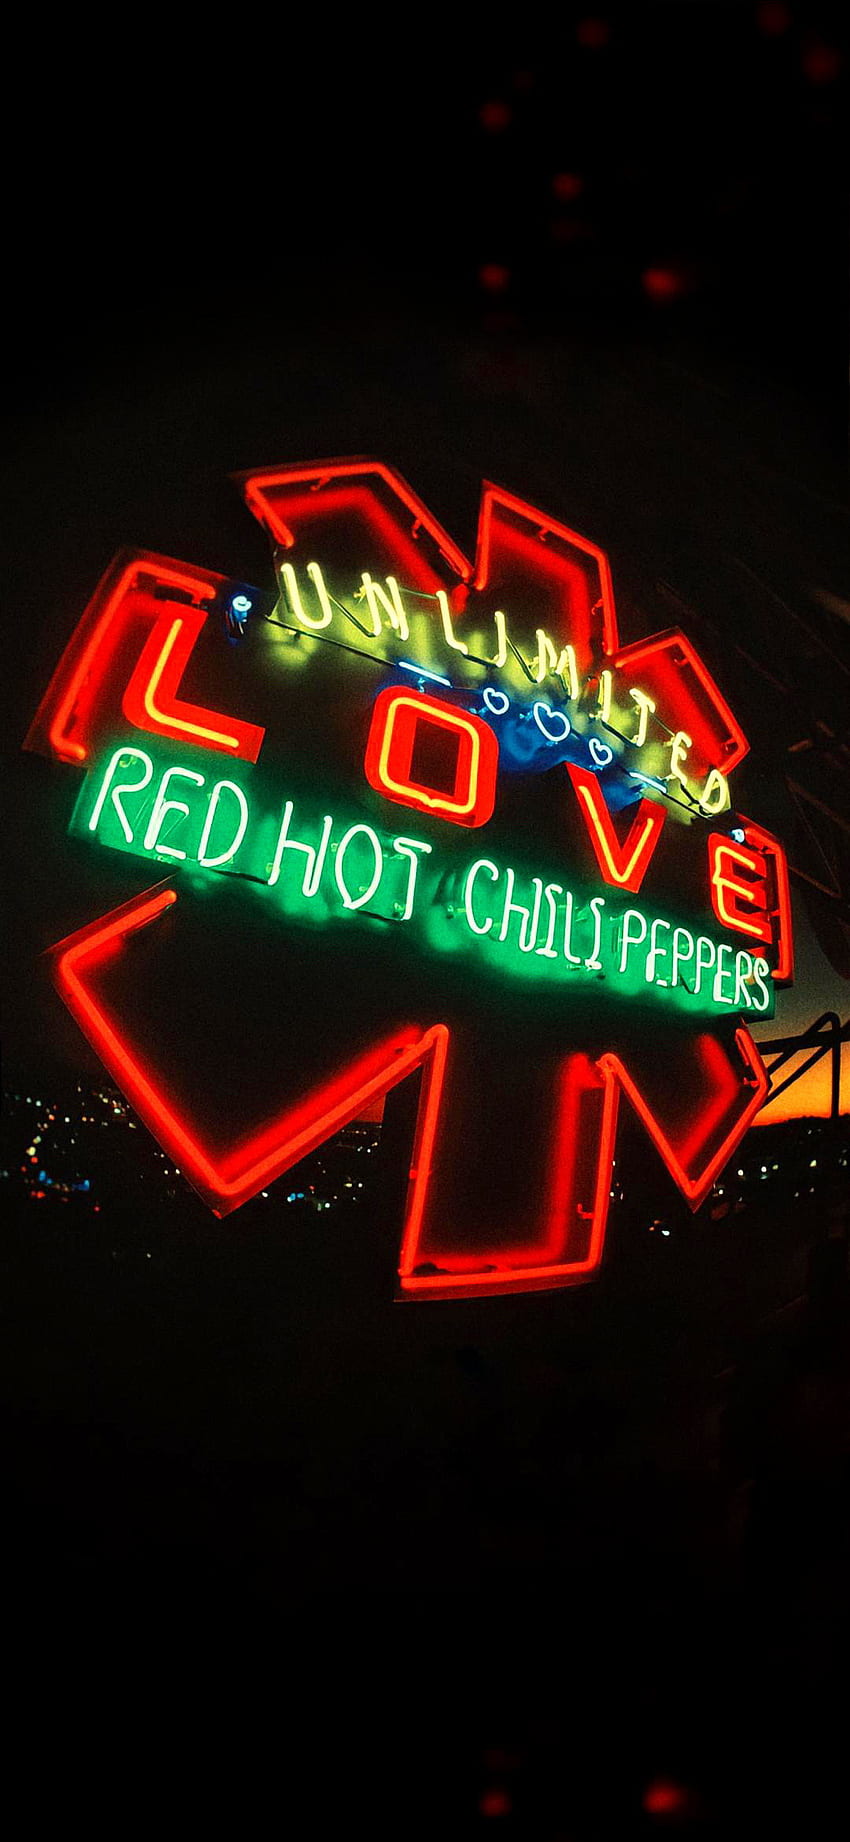 Red hot chili peppers, roca, rhcp fondo de pantalla del teléfono